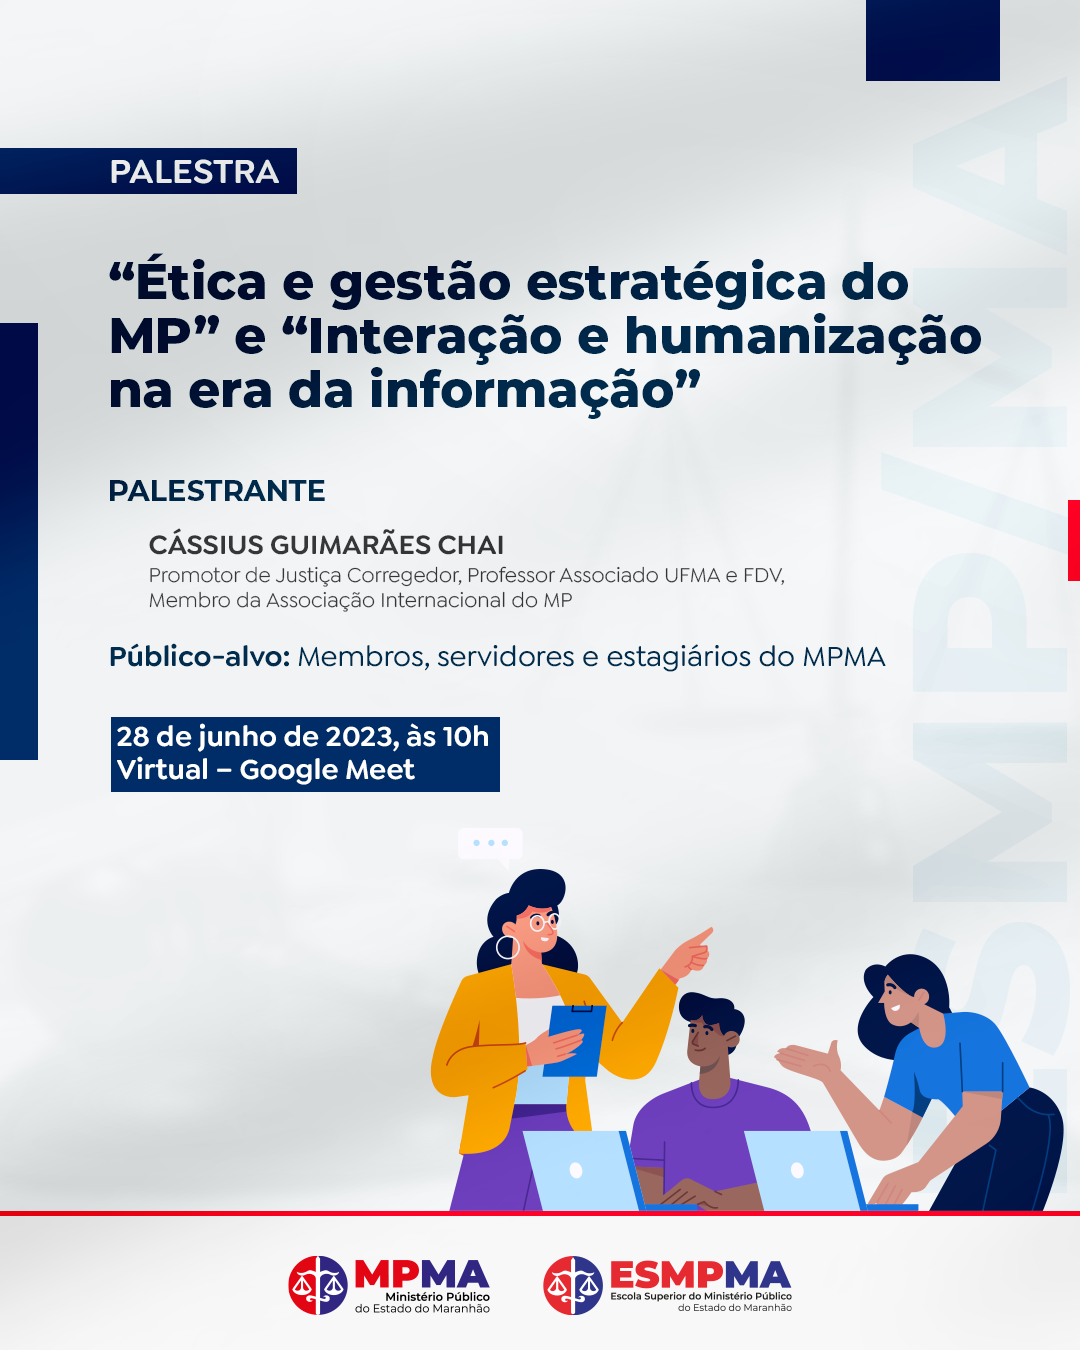 Palestra “Ética e gestão estratégica do MP” e “Interação e humanização na era da informação”